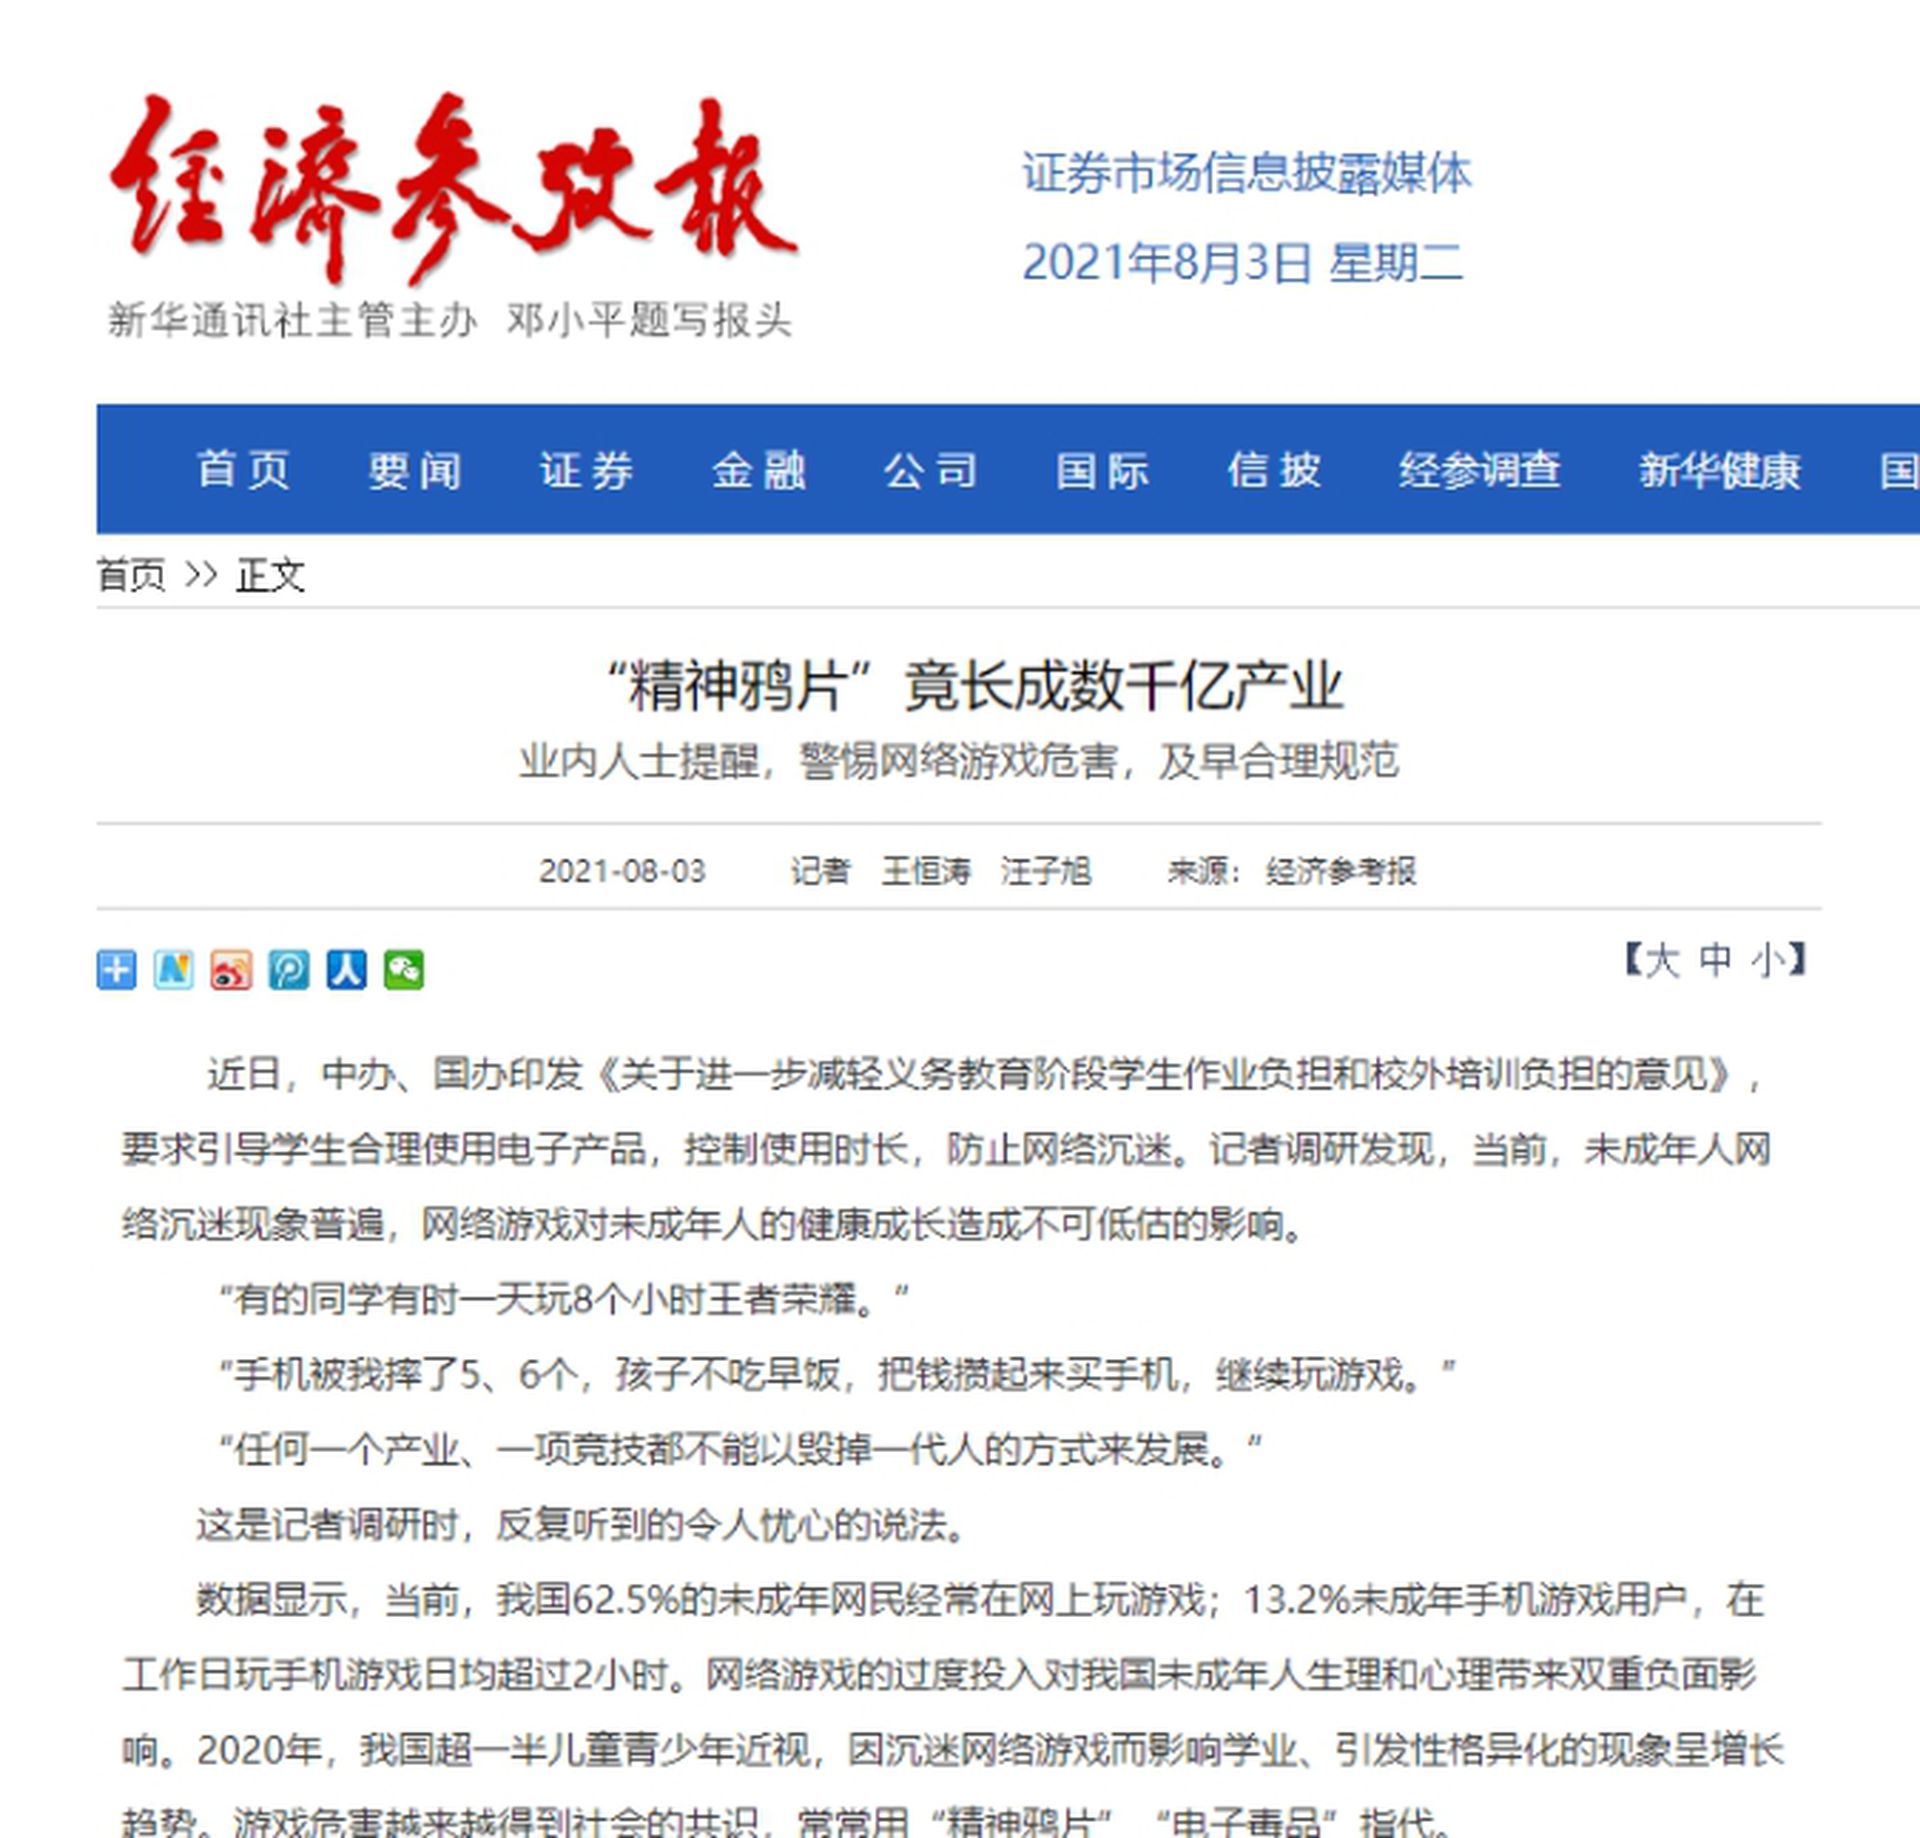 中国游戏为避风险跳过台湾市场台游戏厂商只能就地化缘 多维新闻 台湾